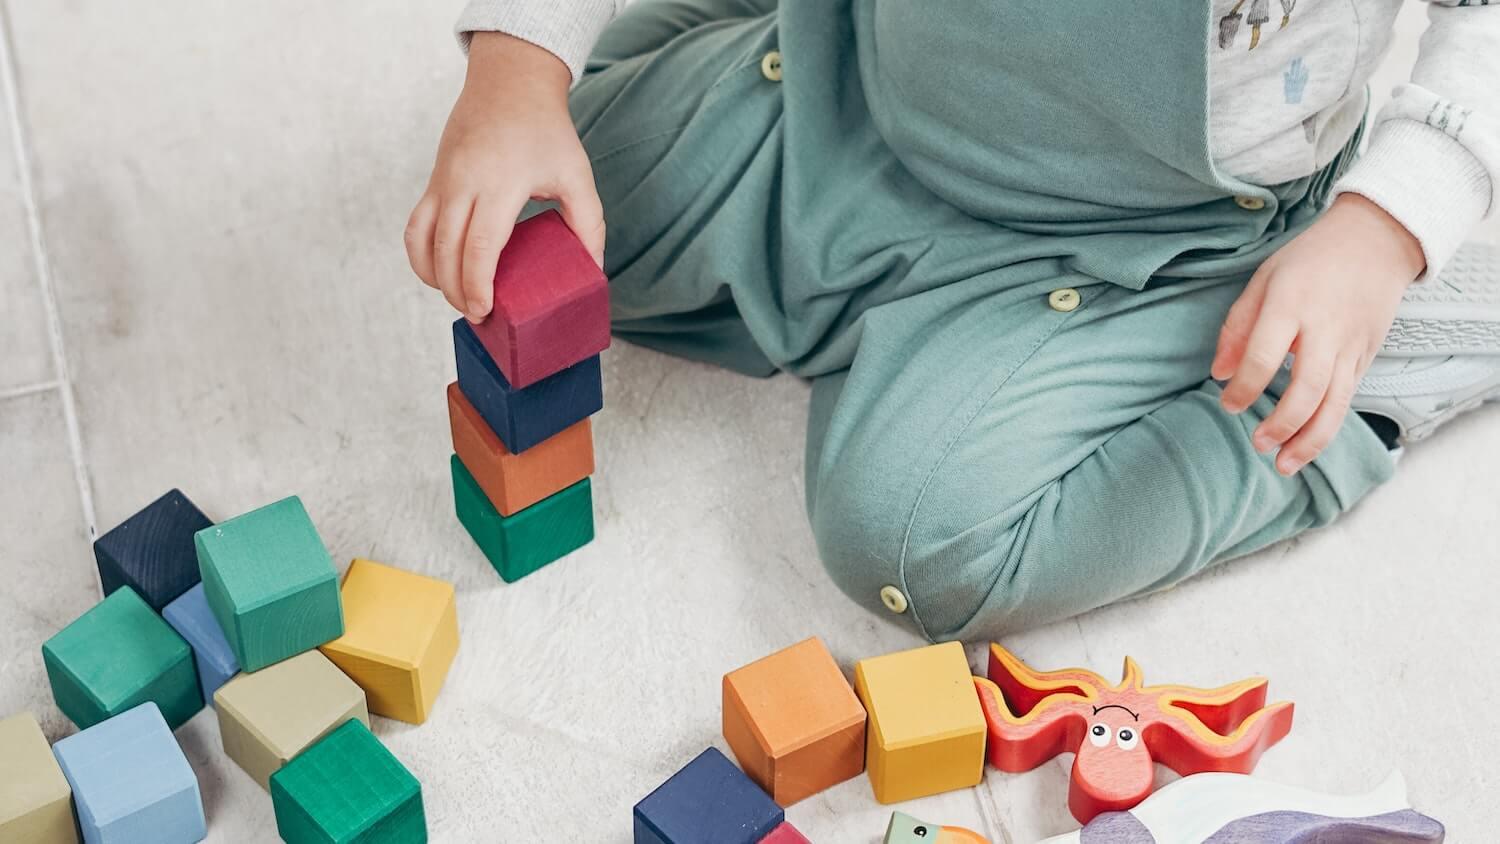 Comment choisir des jeux Montessori ? - Paradis du jouet